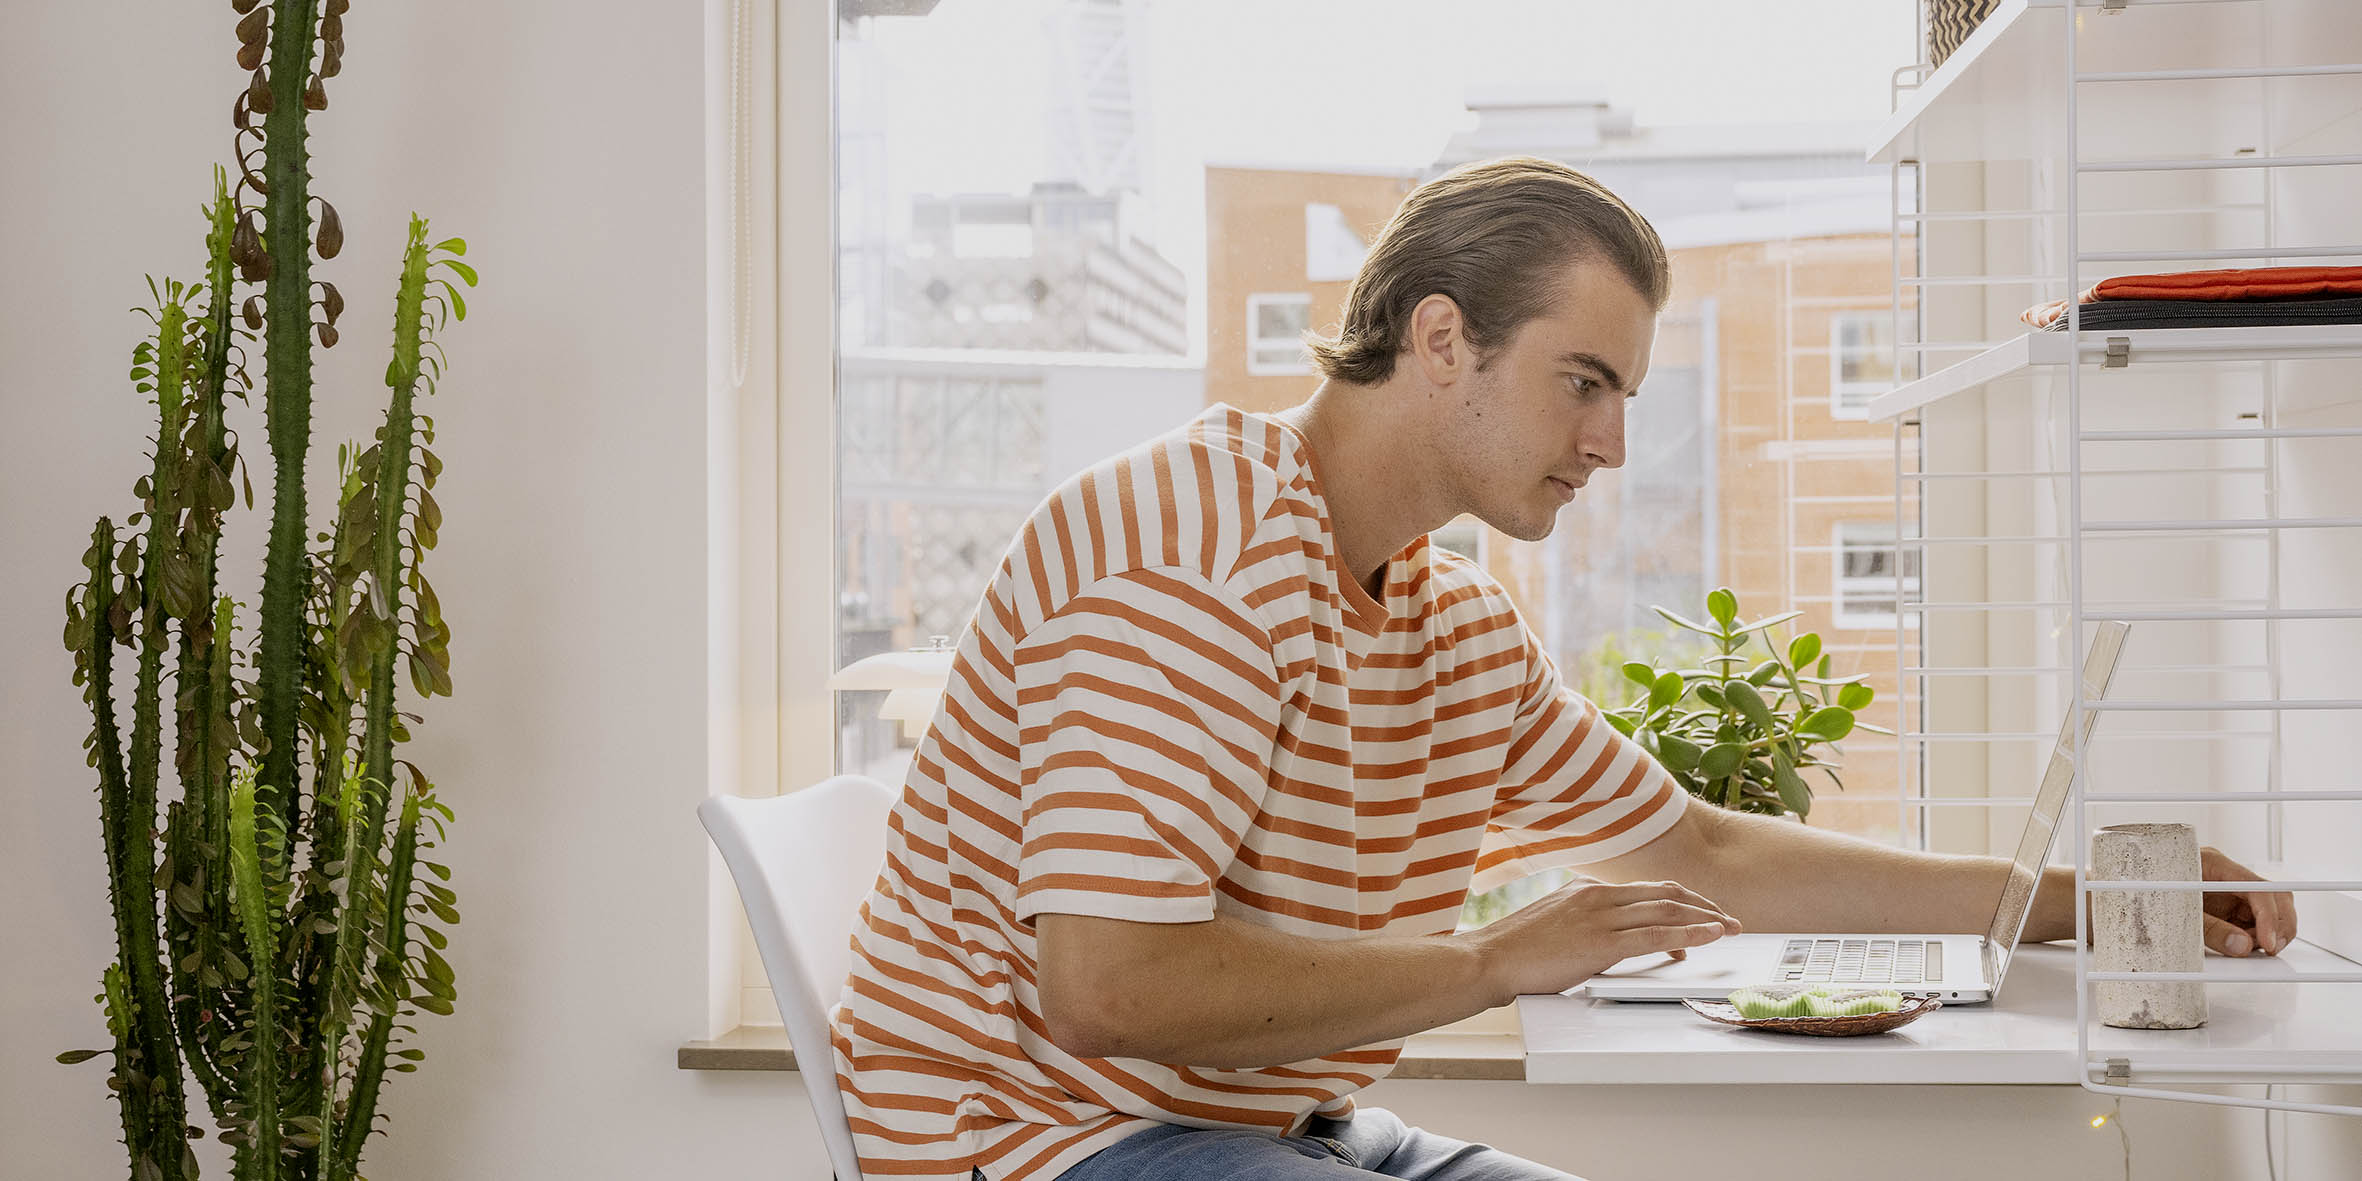 En ung kille med randig tshirt sitter vid sitt skrivbord och tittar på en laptop.